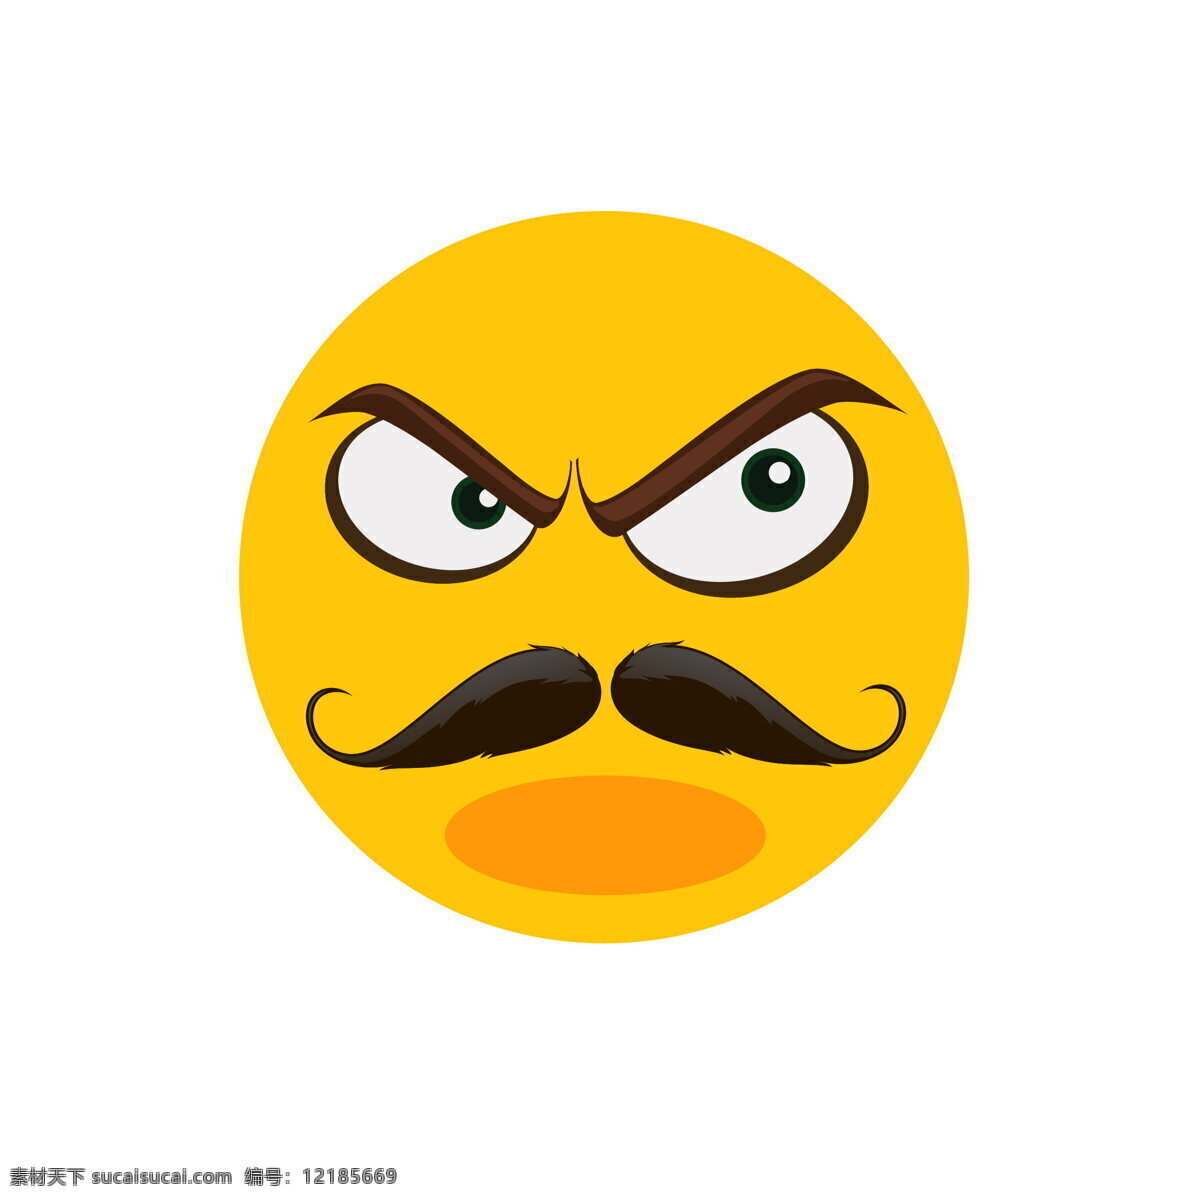 愤怒黄色表情 愤怒 愤怒表情 黄色表情 表情符号 黄色符号 卡通 表情 卡通表情 黄色 表情设计 卡通设计 卡通元素 卡通动漫 动漫动画